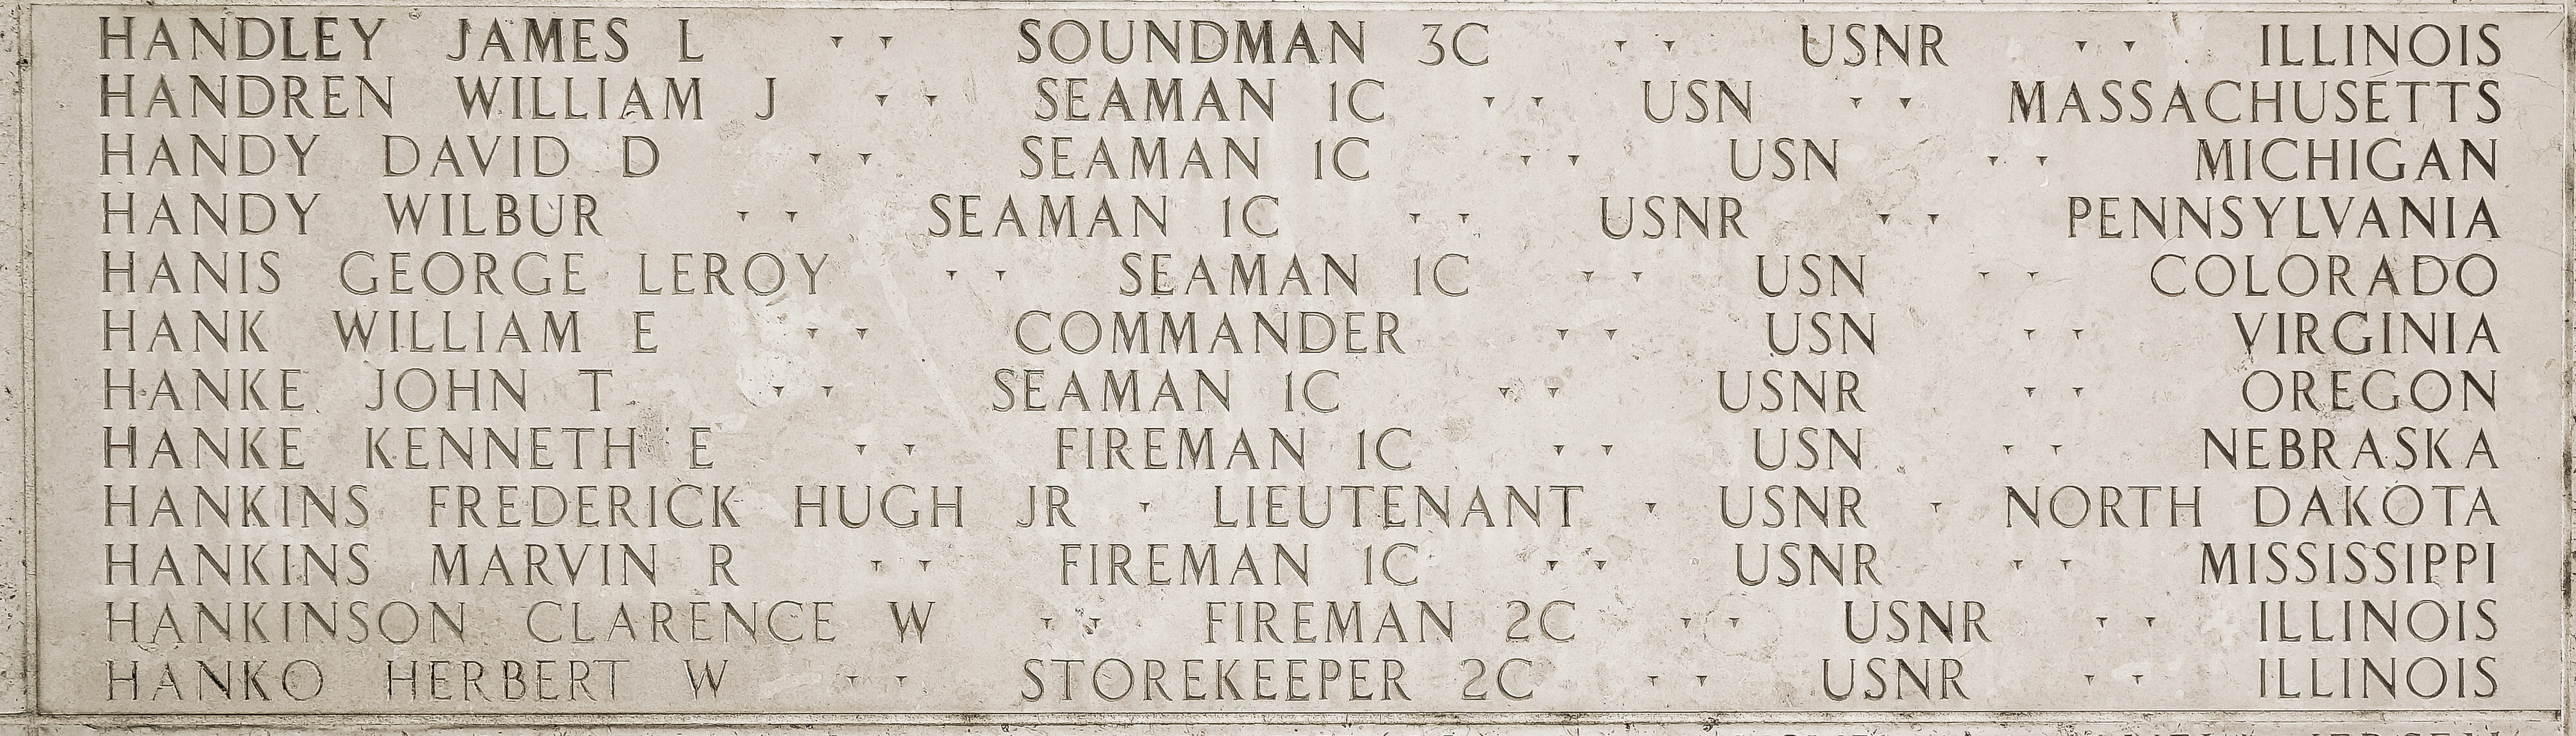 William J. Handren, Seaman First Class